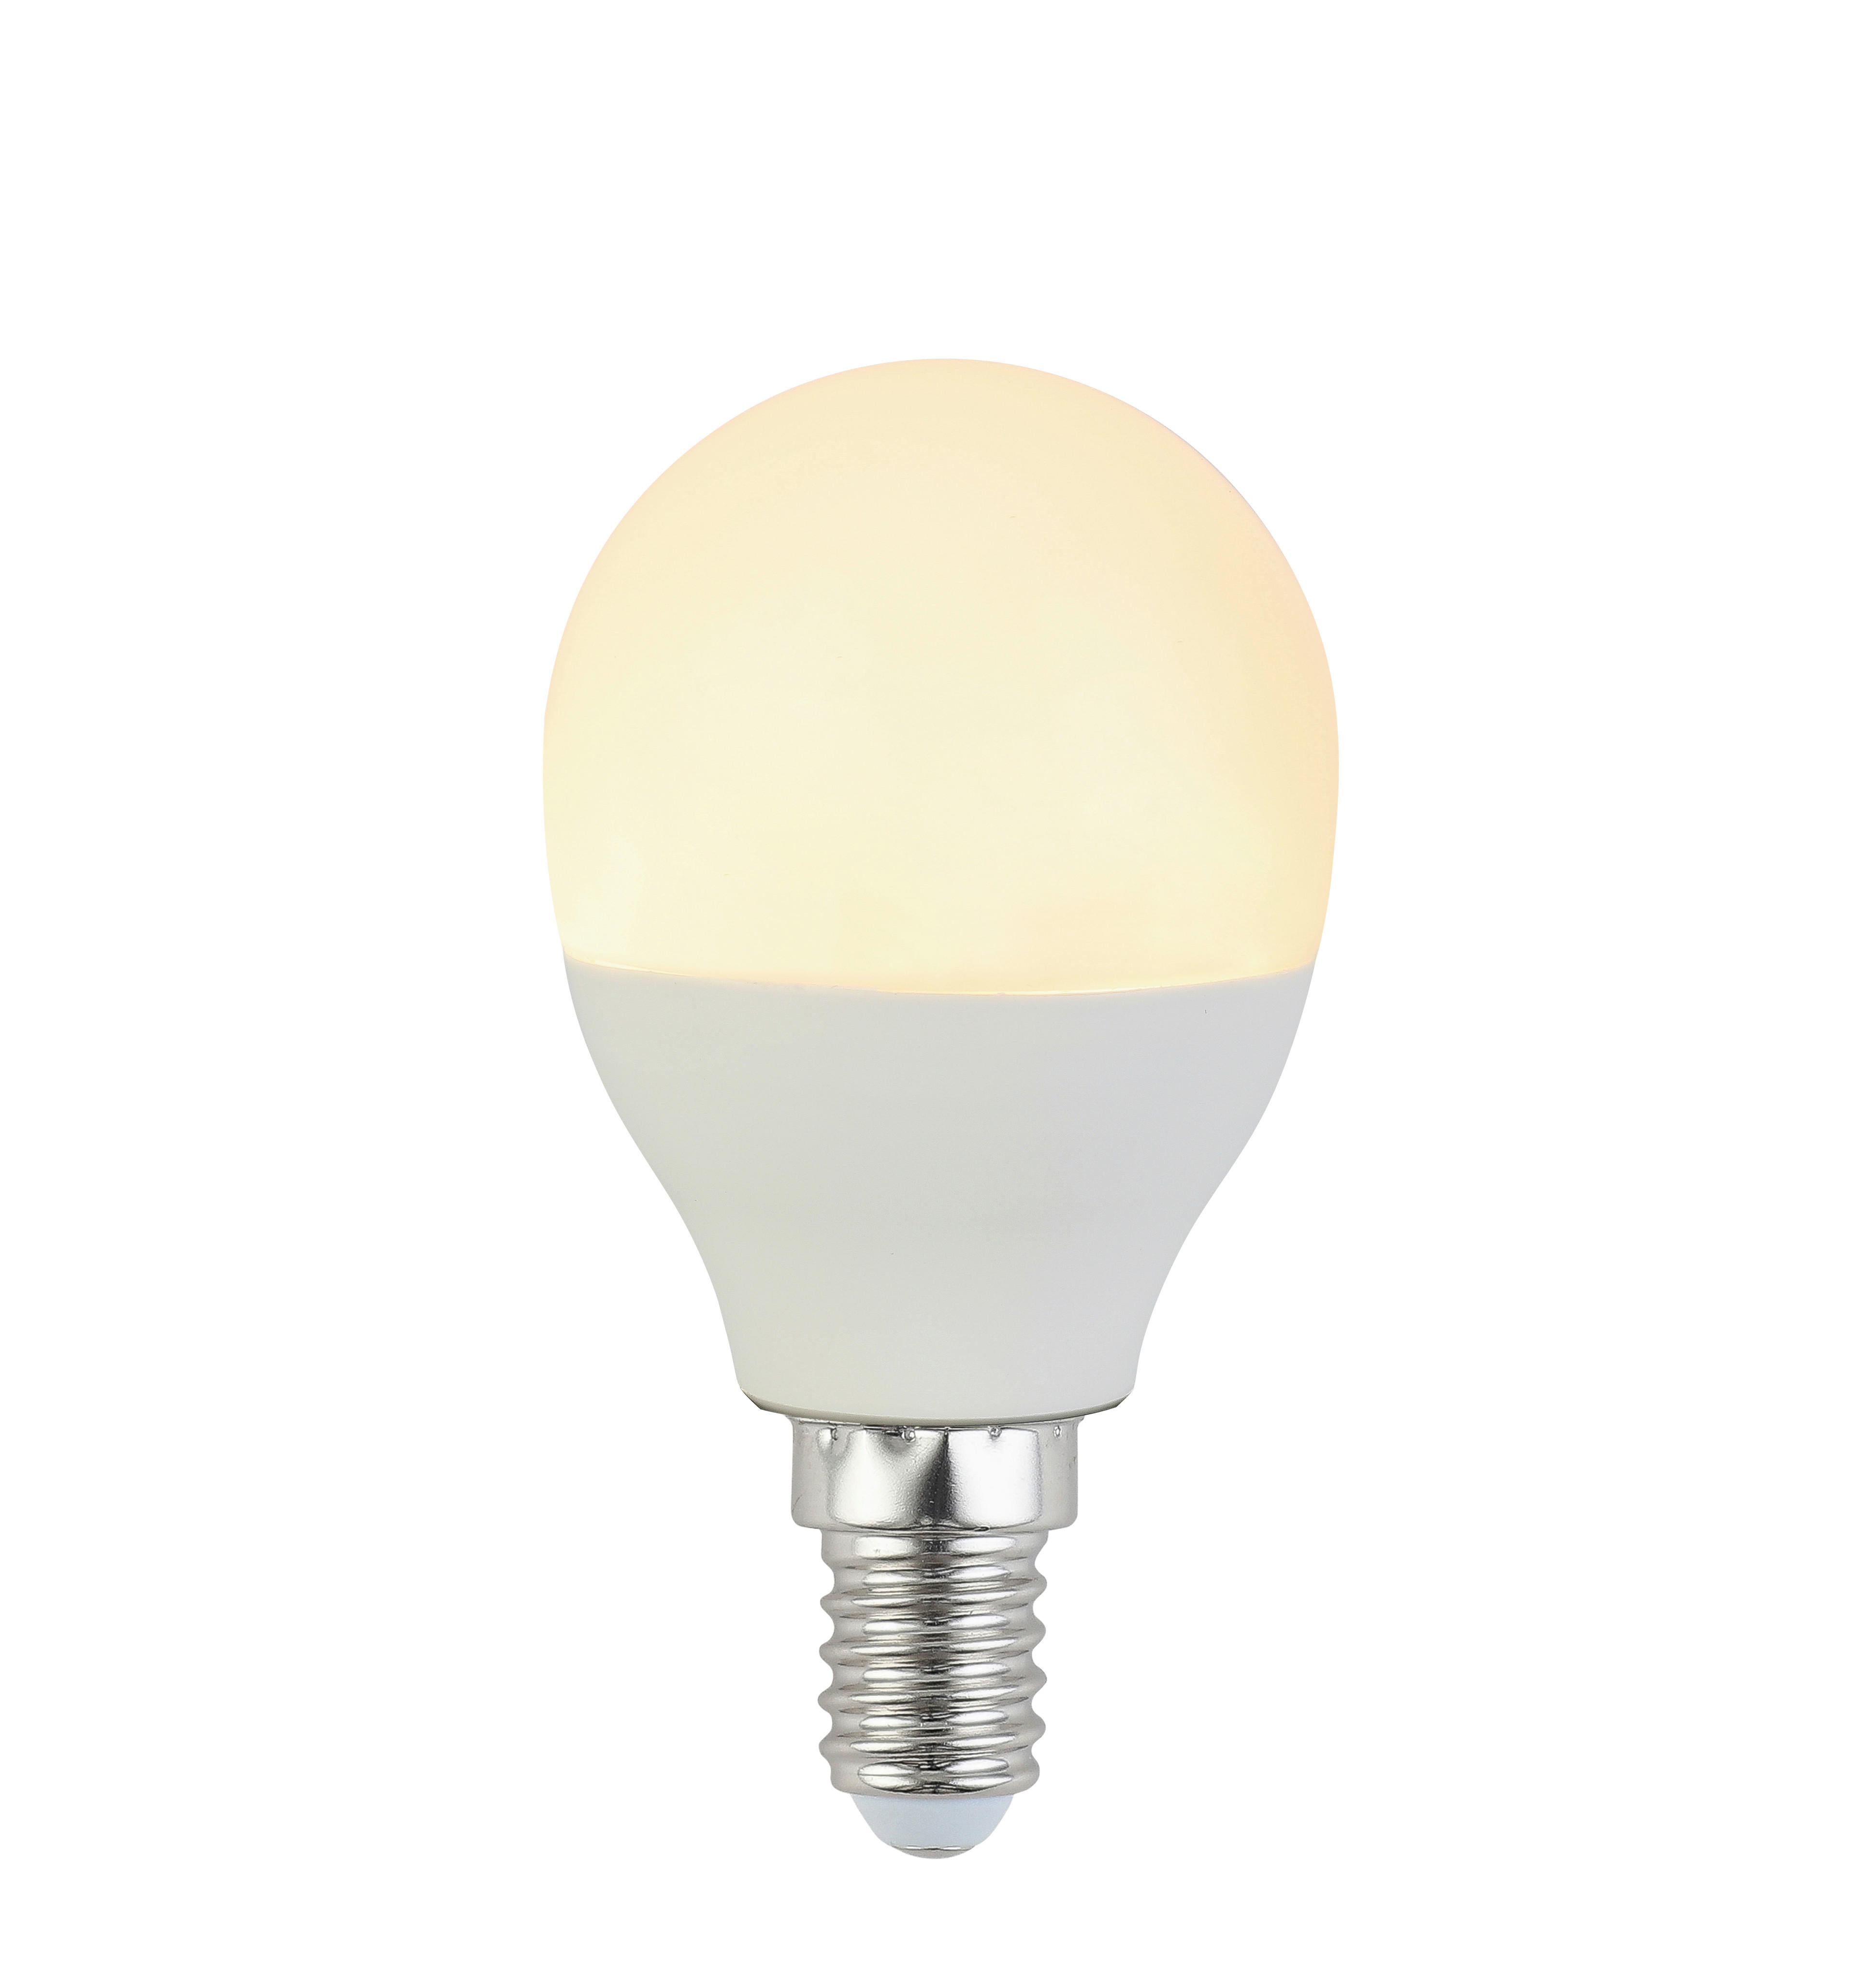 LED ŽIAROVKA - biela, Basics, kov/plast (4,8/8cm) - Boxxx